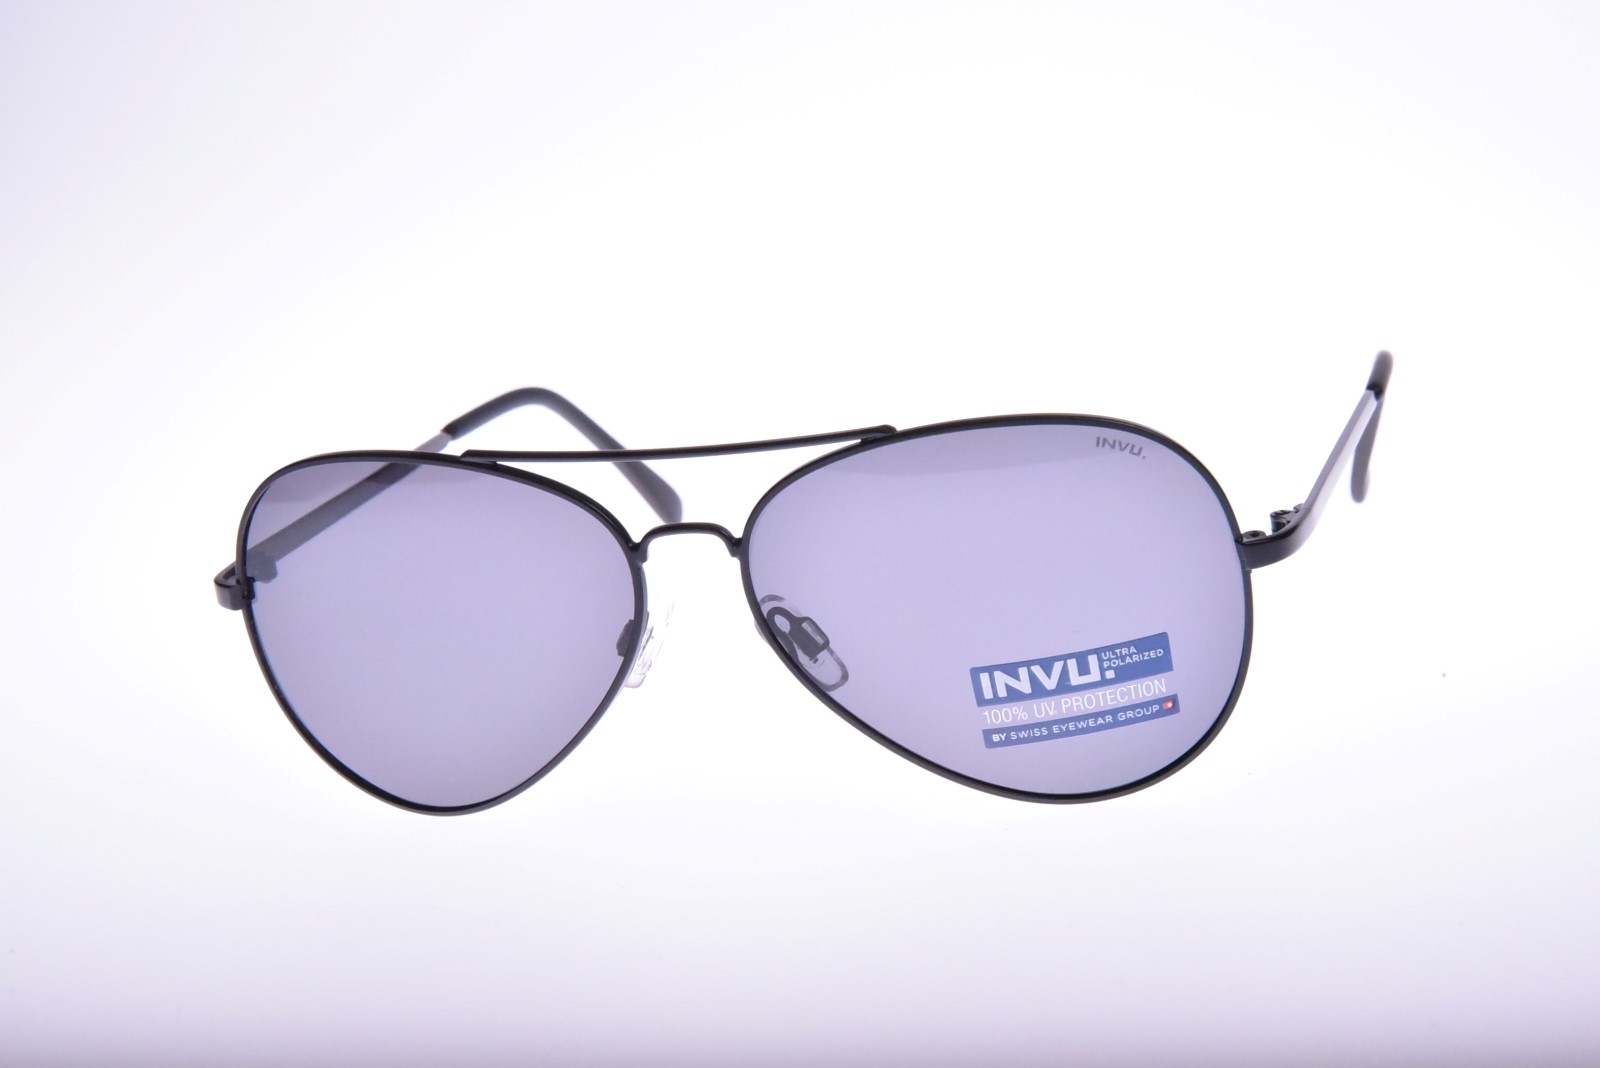 INVU. Classic B1618A - Pánske slnečné okuliare